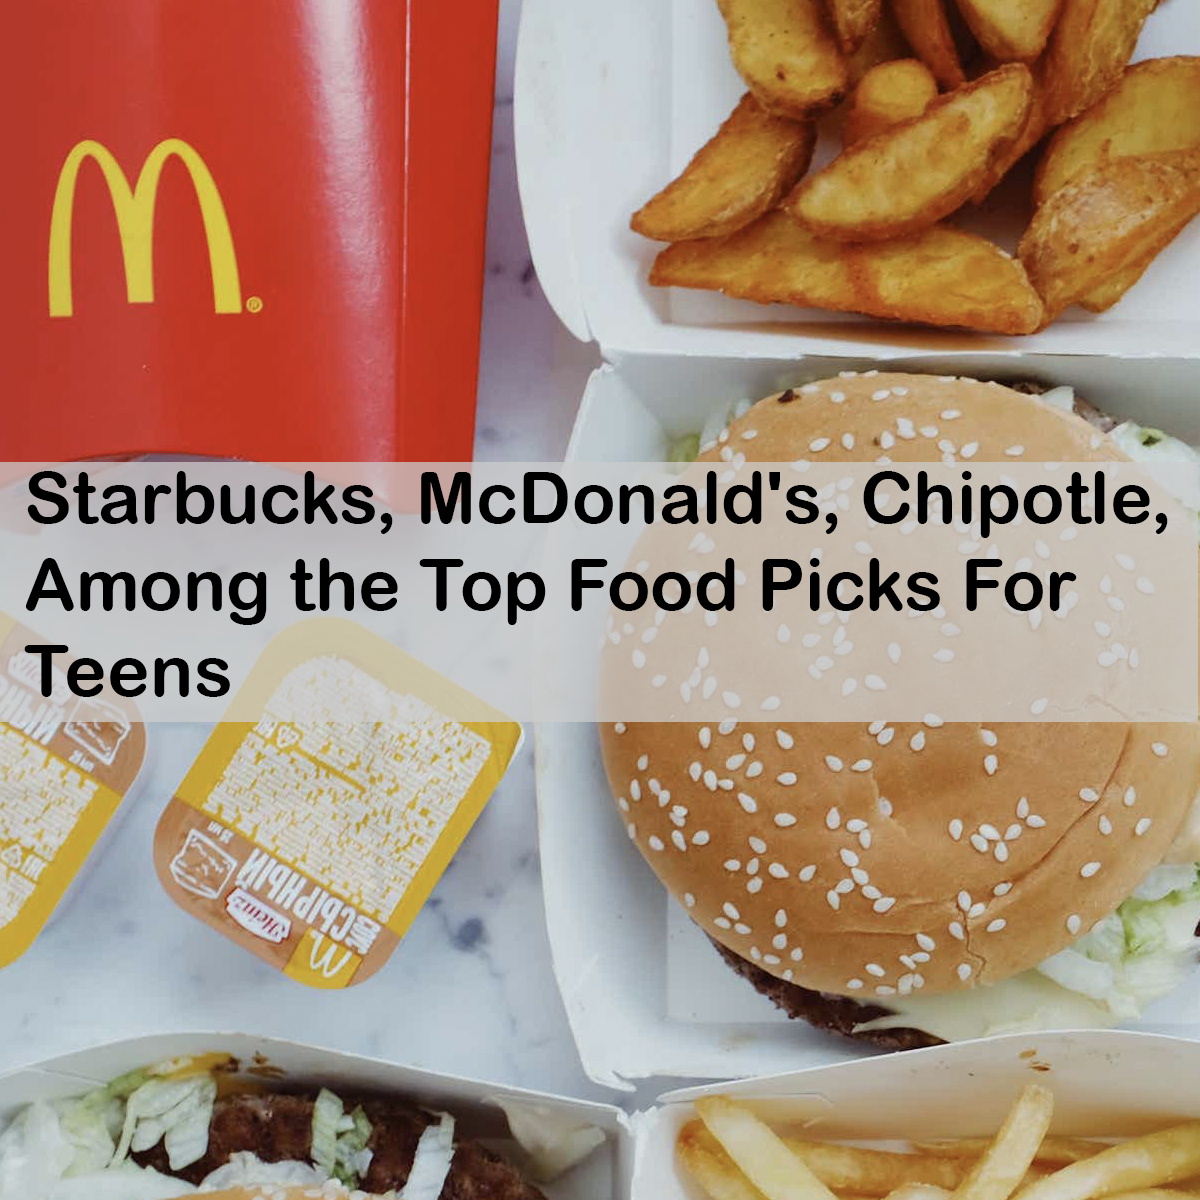 Starbucks, McDonald's, Chipotle, Among the Top Food Picks For Teens